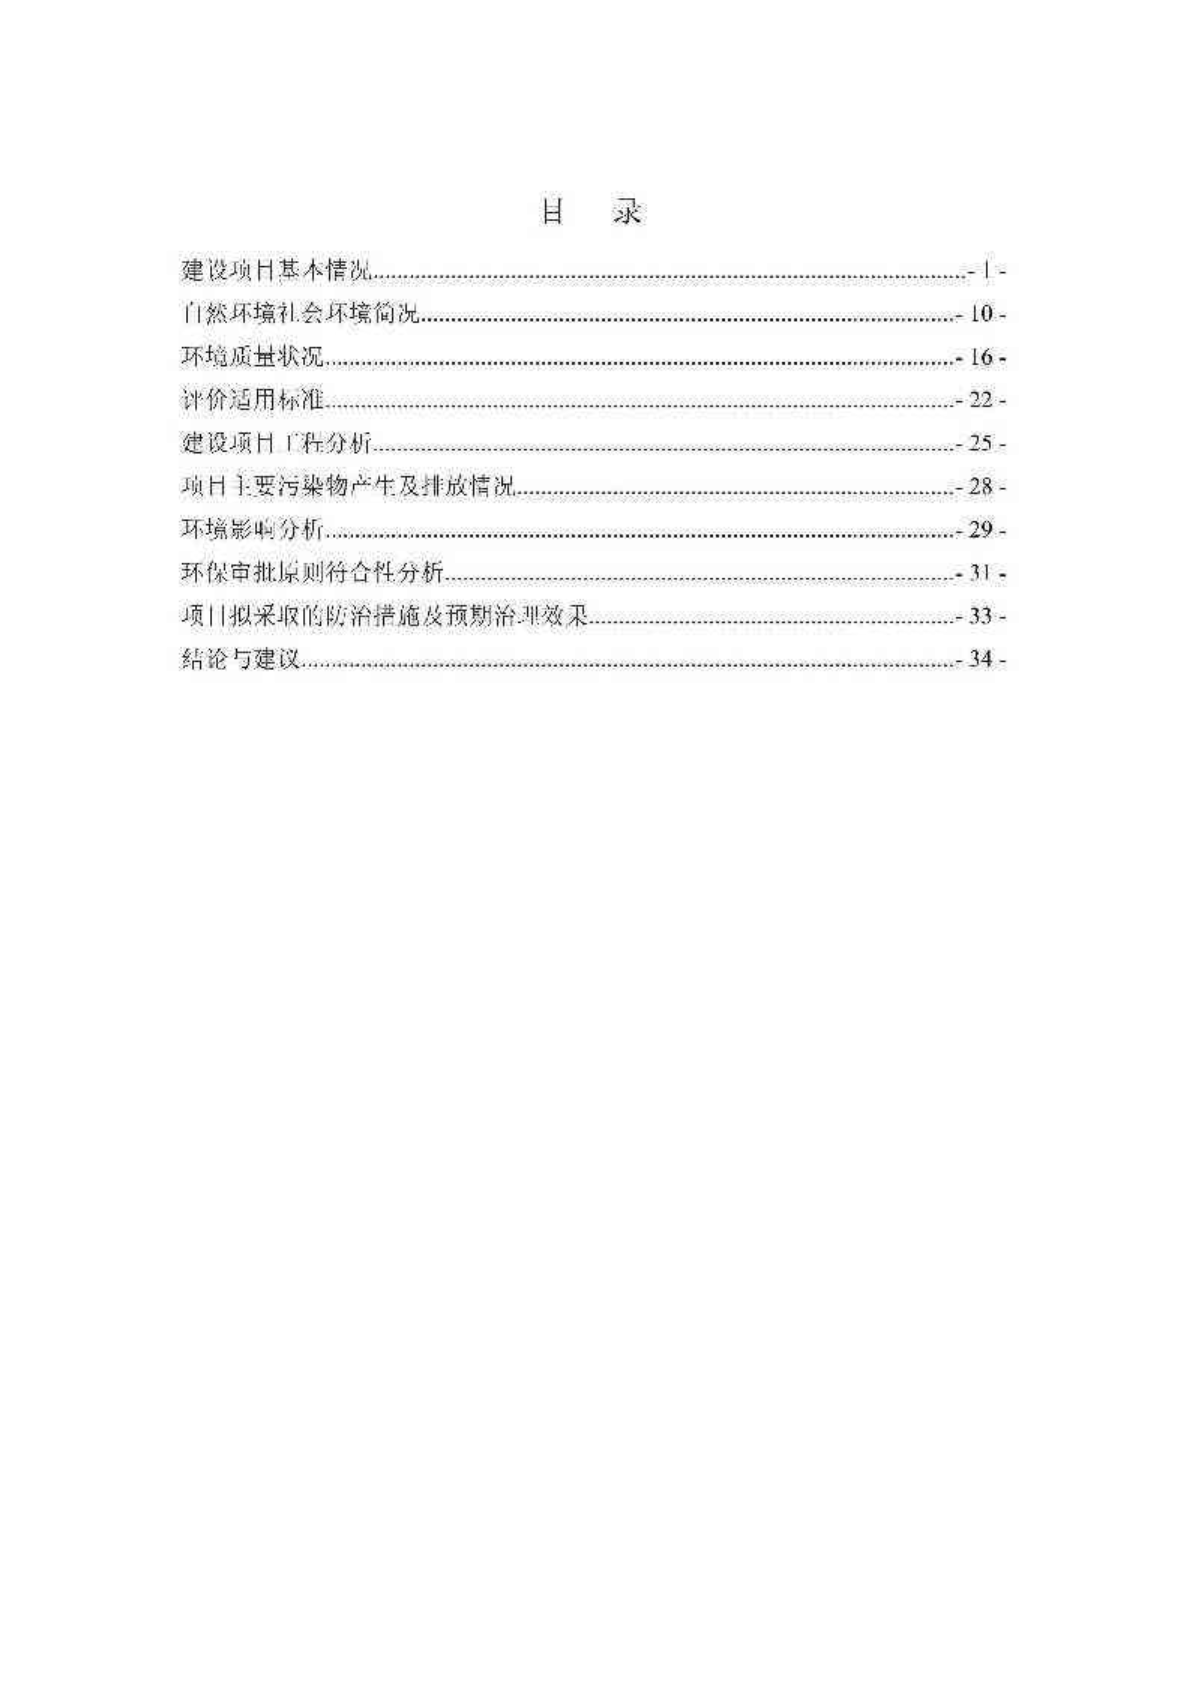 环境影响评价报告公示：温州市米醴琼酒业锅炉改建项目环评公告683.pdf环评报告-图一